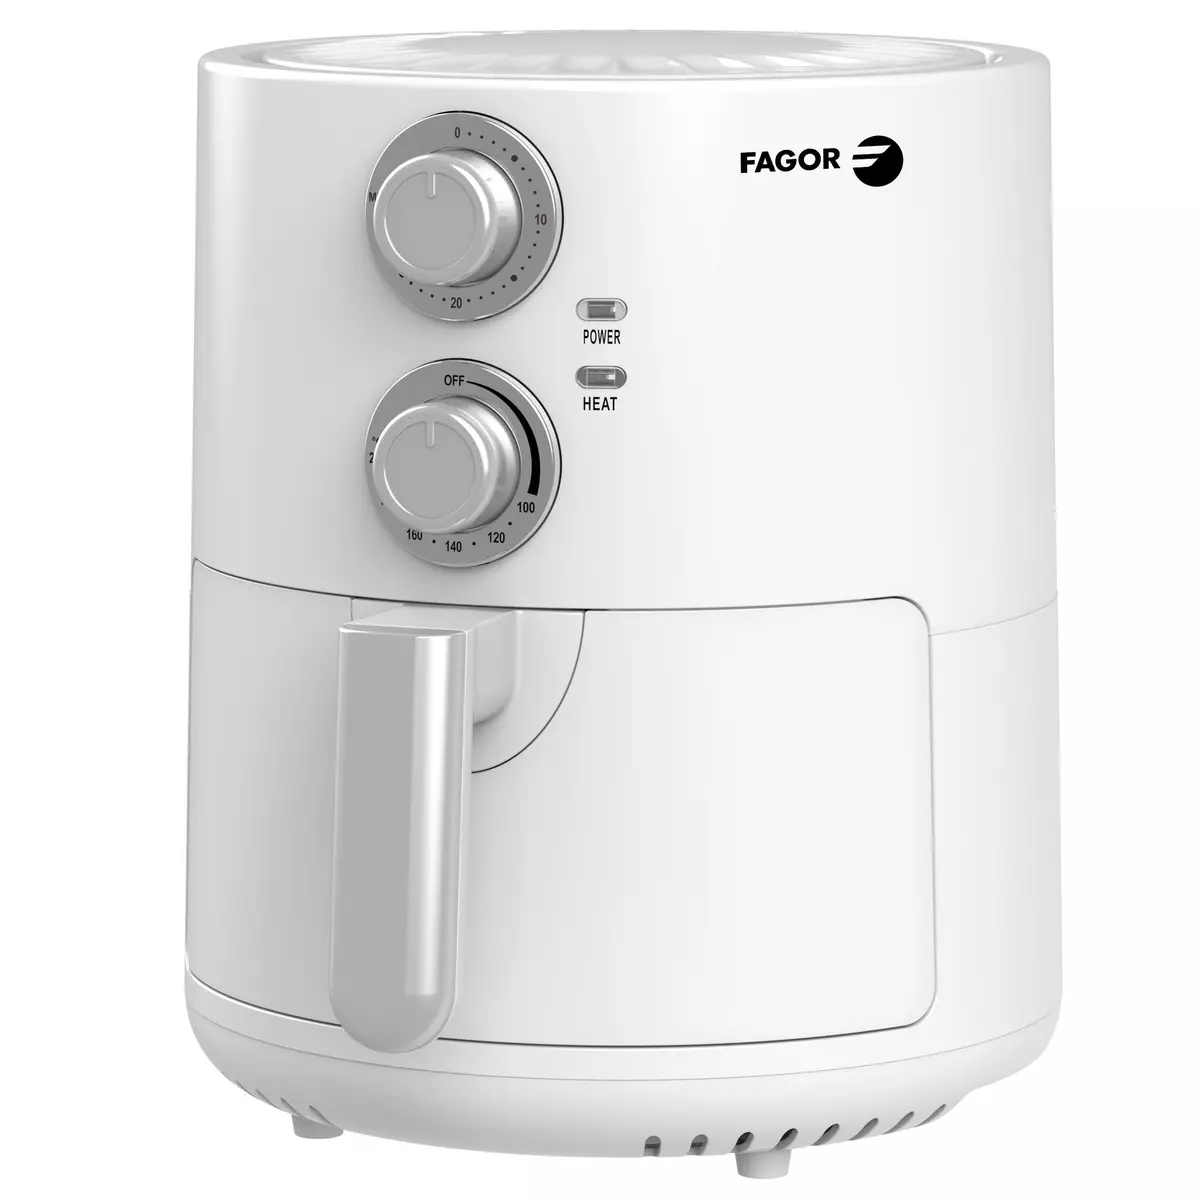 FAGOR Friteuse électrique sans huile à air chaudFG159 - Blanc